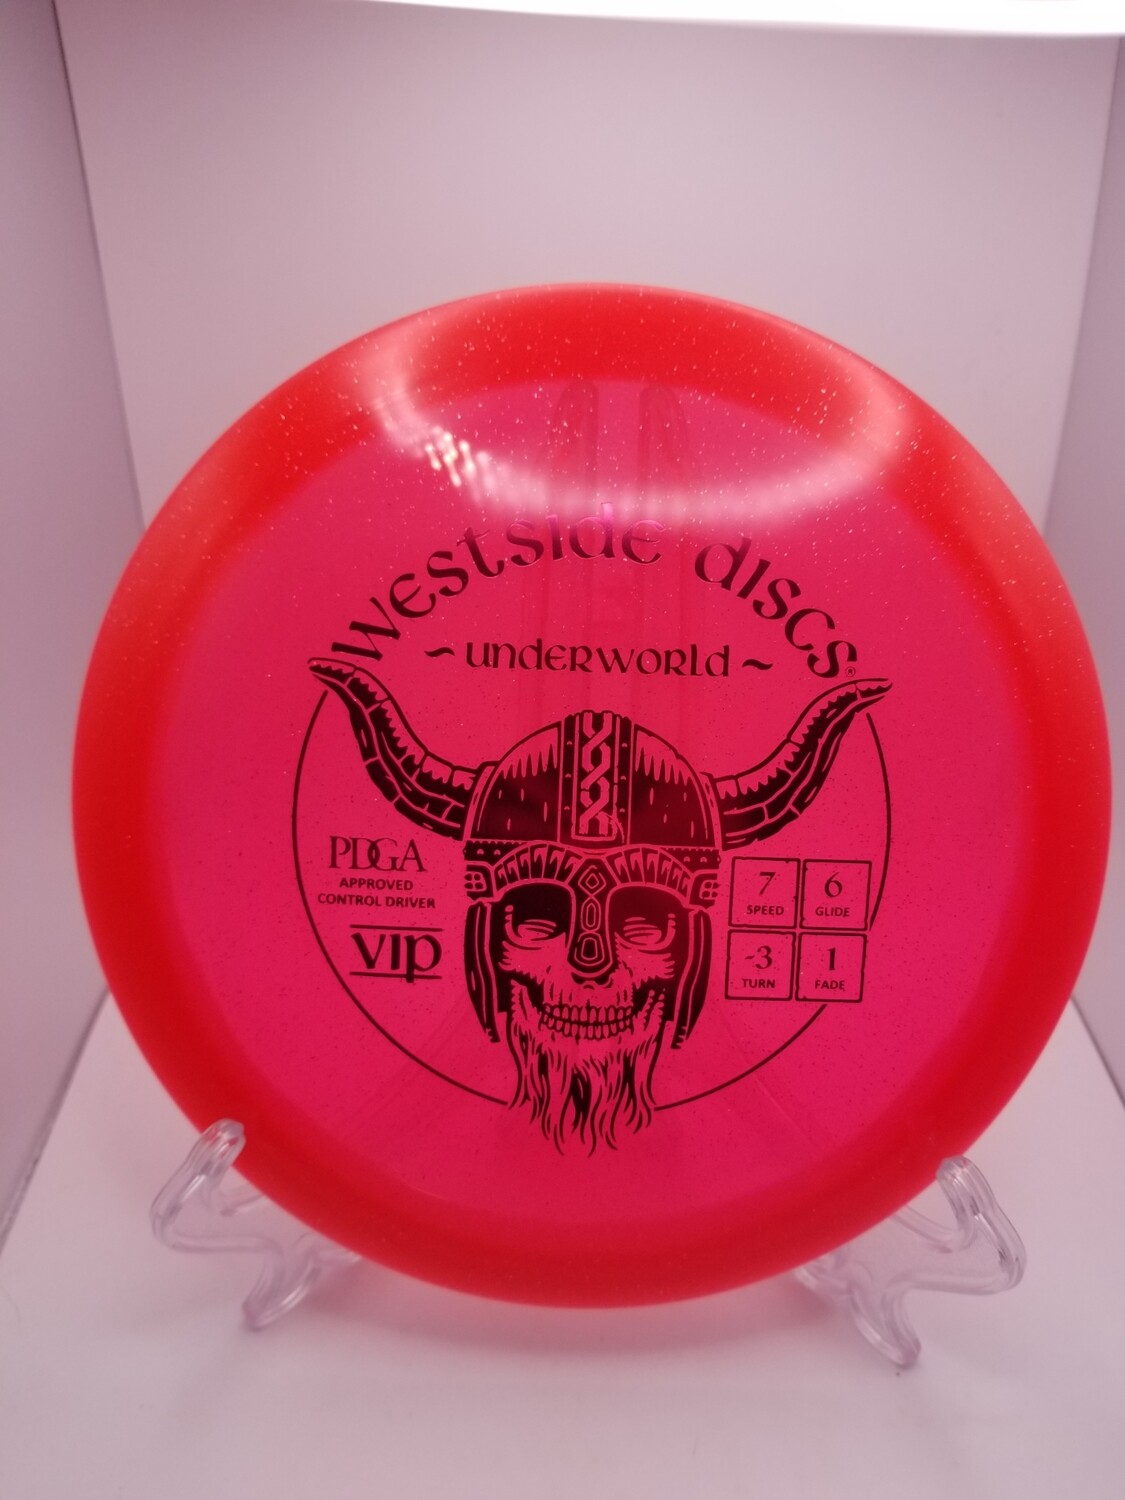 Westside Discs VIP Underworld Sparkled Red 170-172g